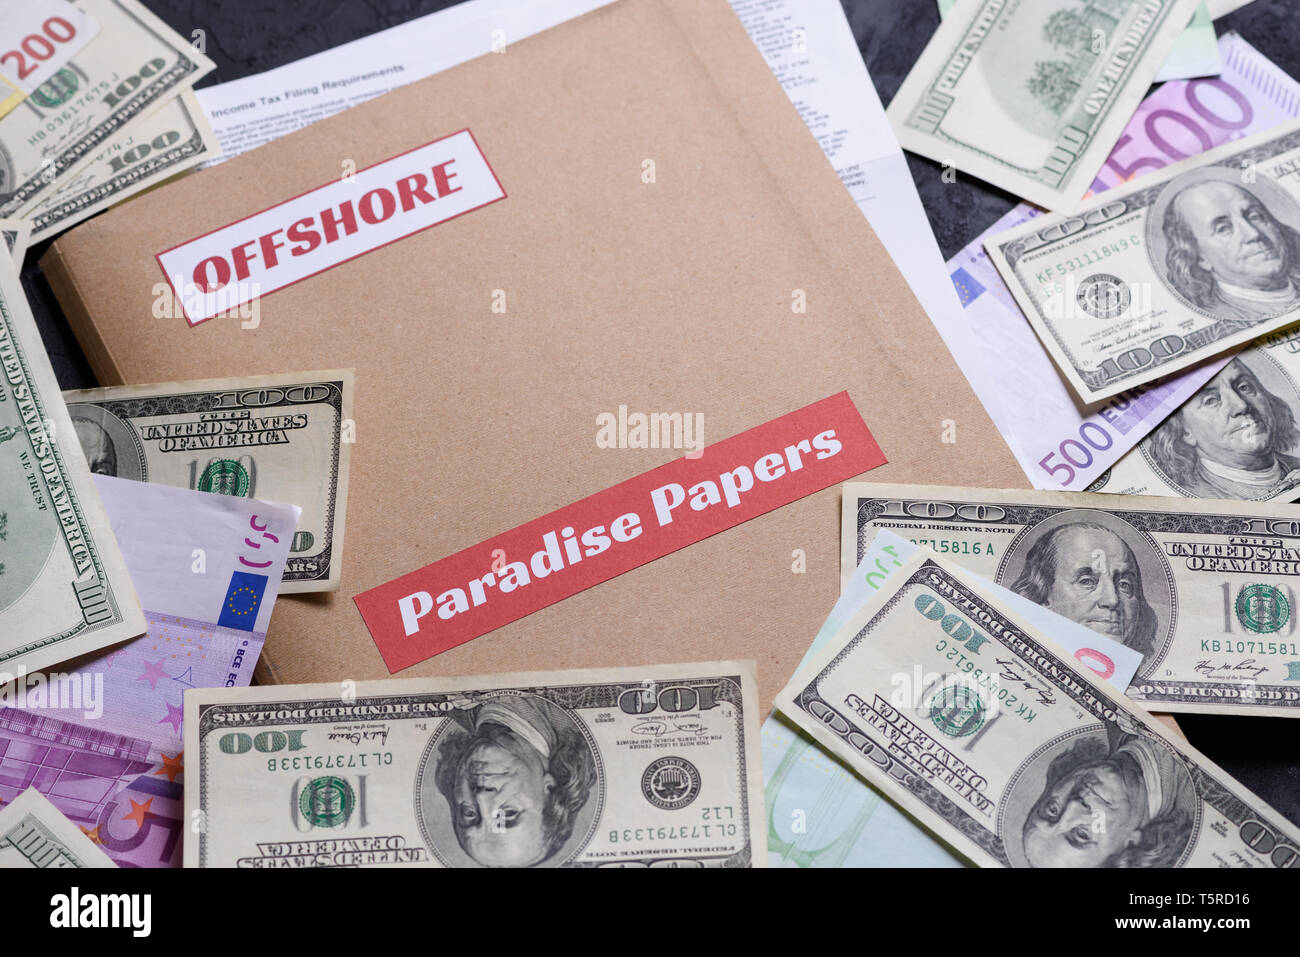 Papier Ordner mit dem Paradies Papiere und offshore Label auf es mit europäischen und US-amerikanischen Währung, offshore steuern Himmel Dokumente leck Konzept Stockfoto